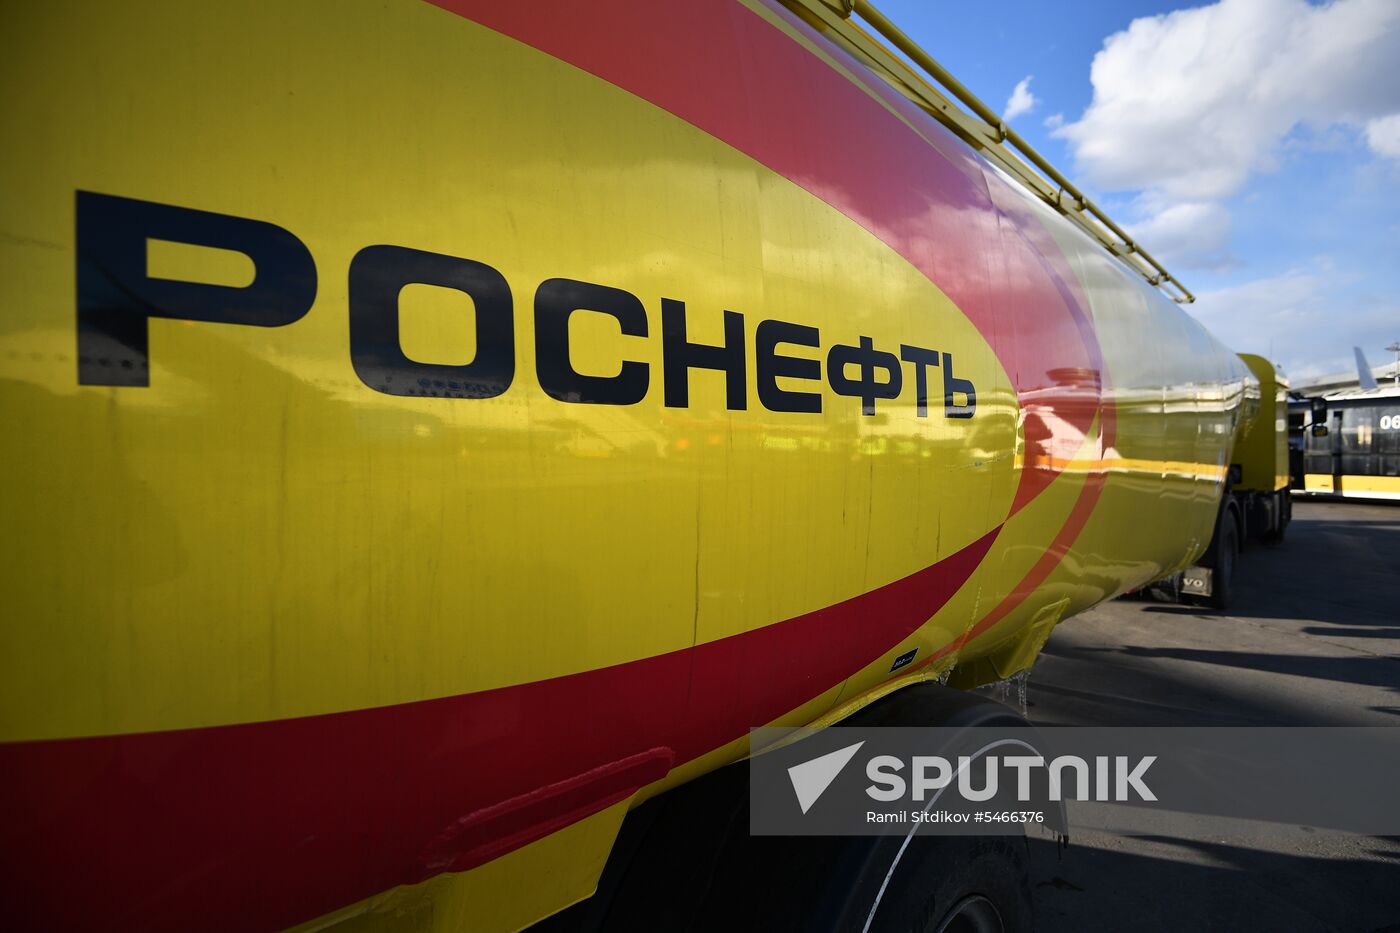 Maintenance of Pobeda aircraft at Vnukovo airport